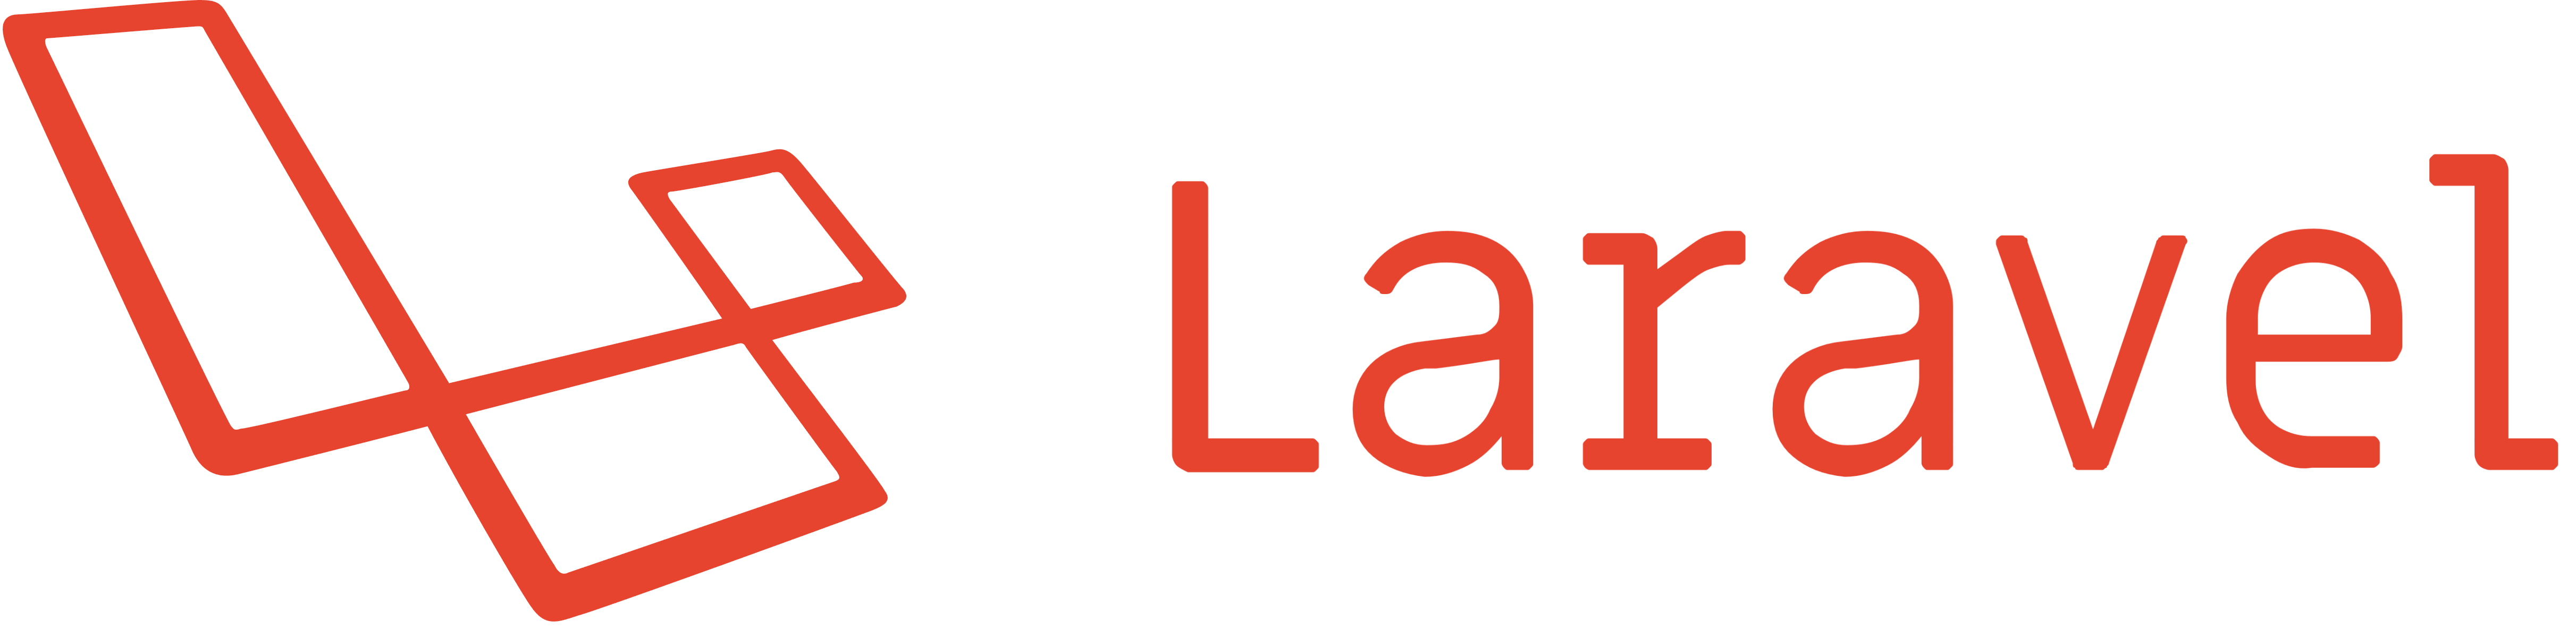 Laravel – Logos Download